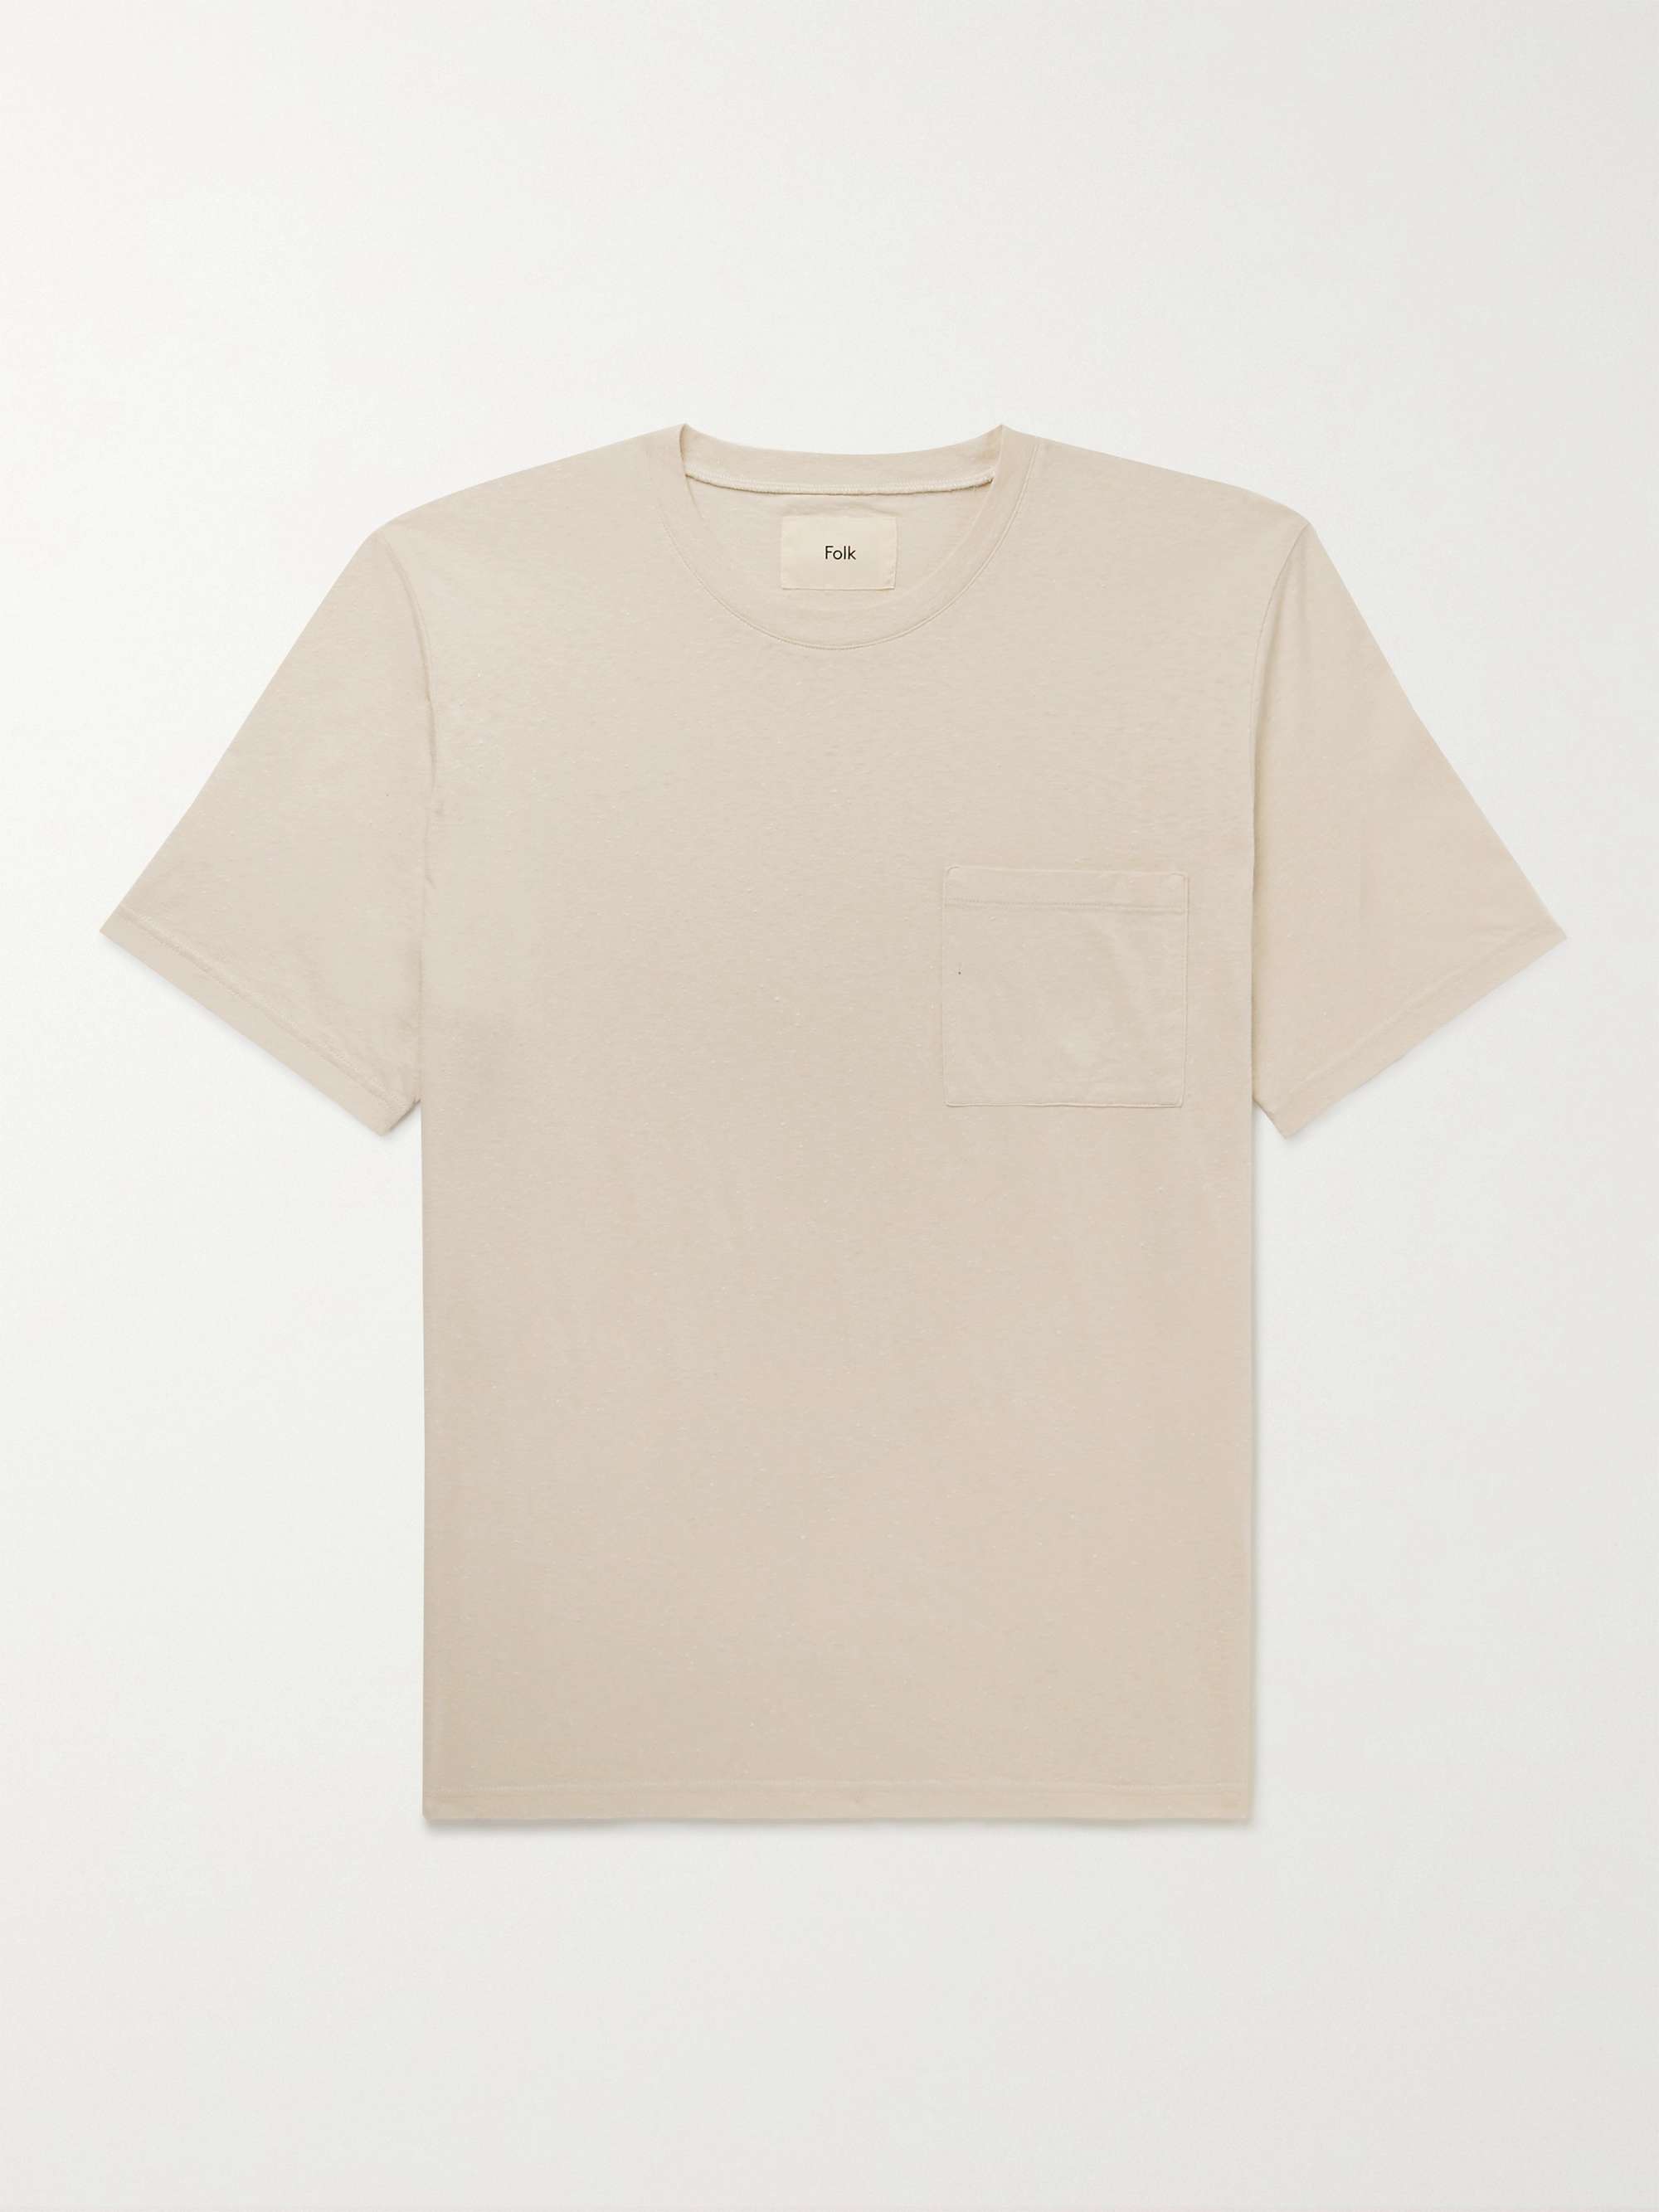 FOLK Assembly Organic Cotton-Blend Jersey T-Shirt